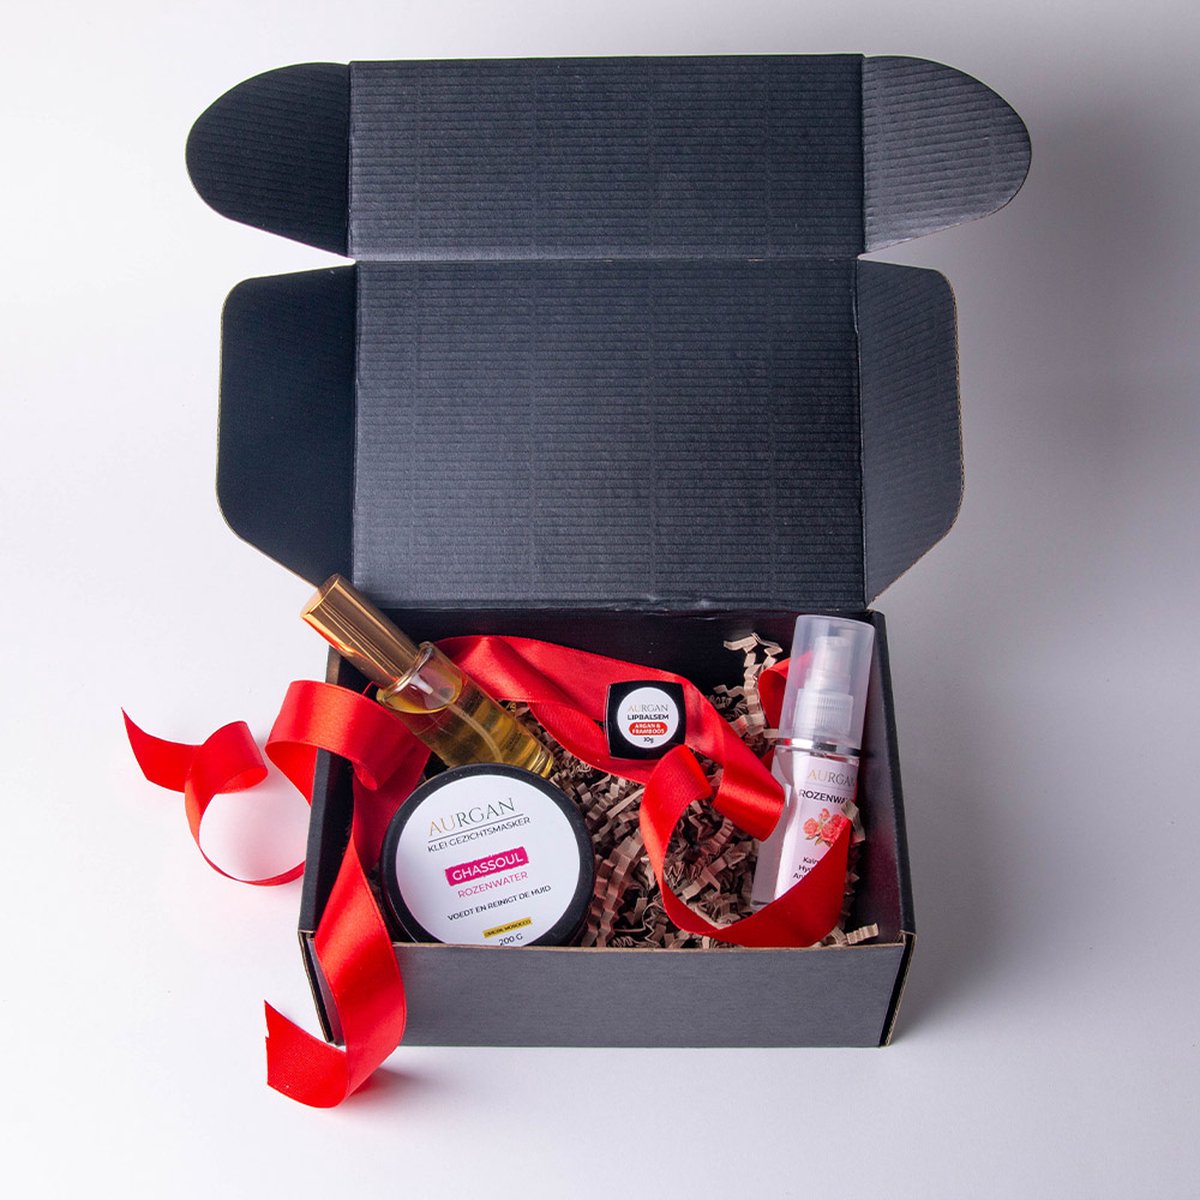 Rose Care Box - Natuurlijke Cosmetica met Rozenwater 60ml + Gezichtsmasker 200g + Lippenbalsem 10g + Arganolie 30ml – Giftset – Verjaardag – Cadeau tip – Vrouw – Moederdag pakket